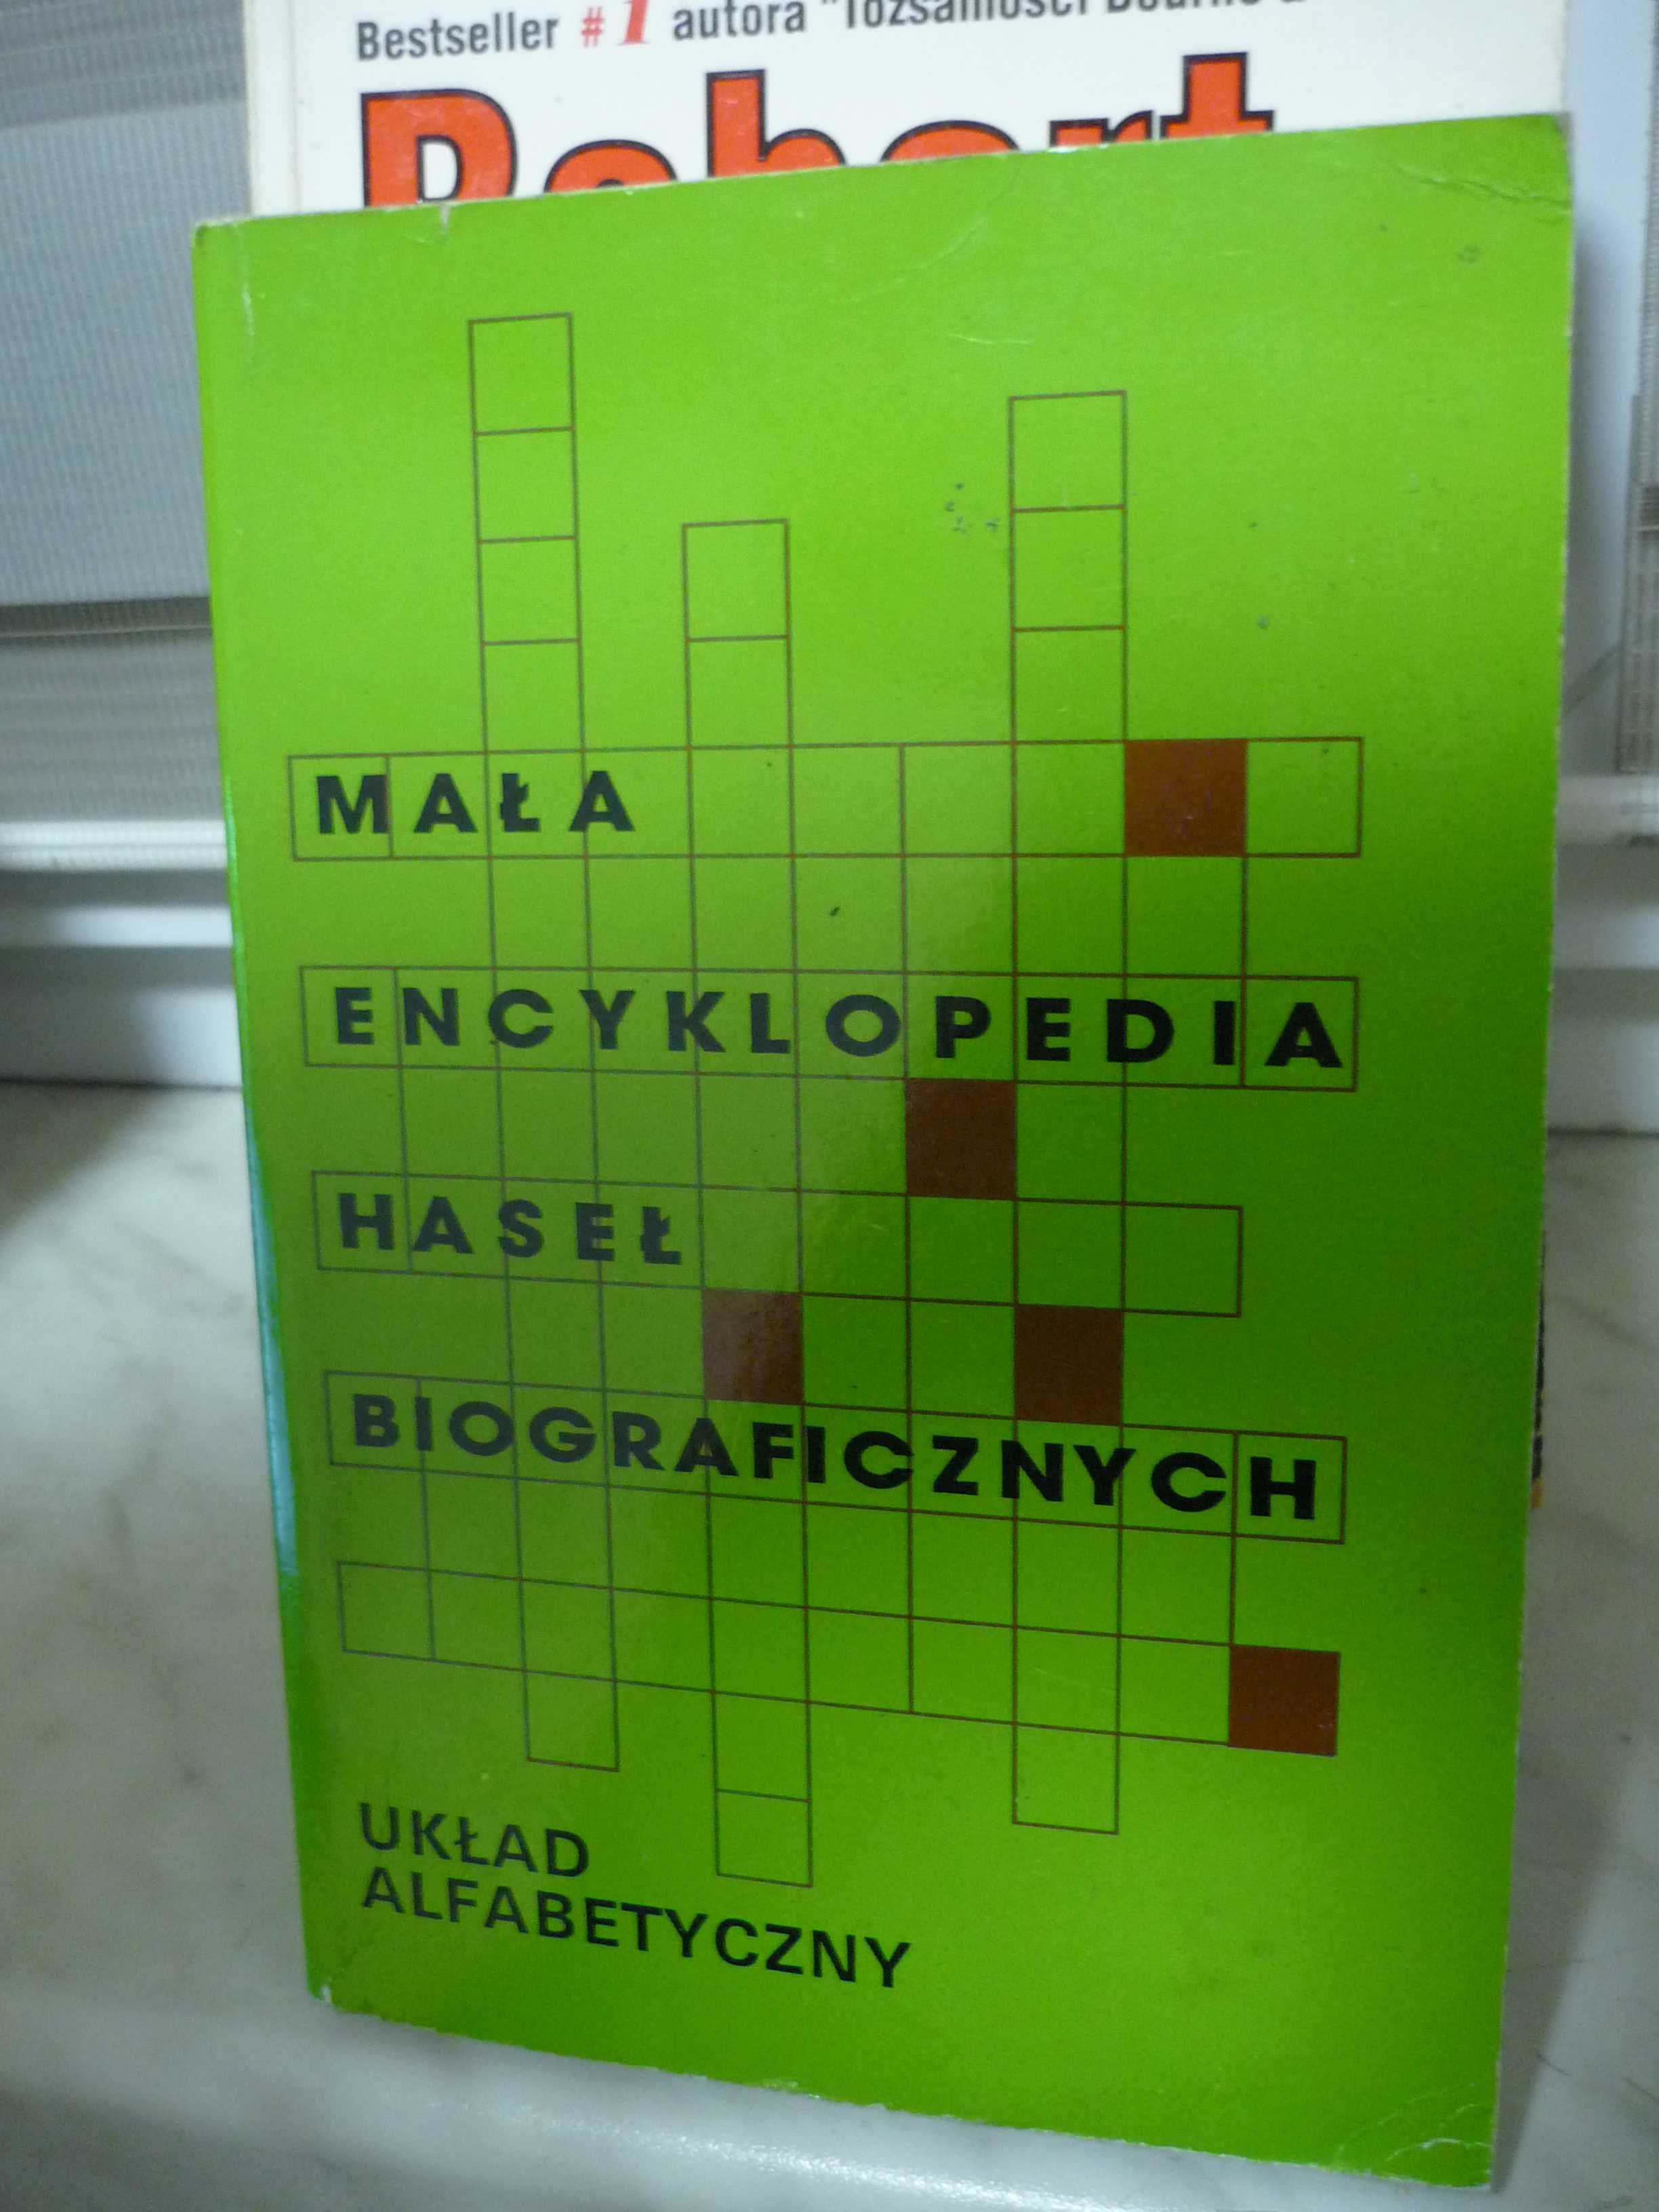 Mała encyklopedia haseł biograficznych , układ alfabetyczny.